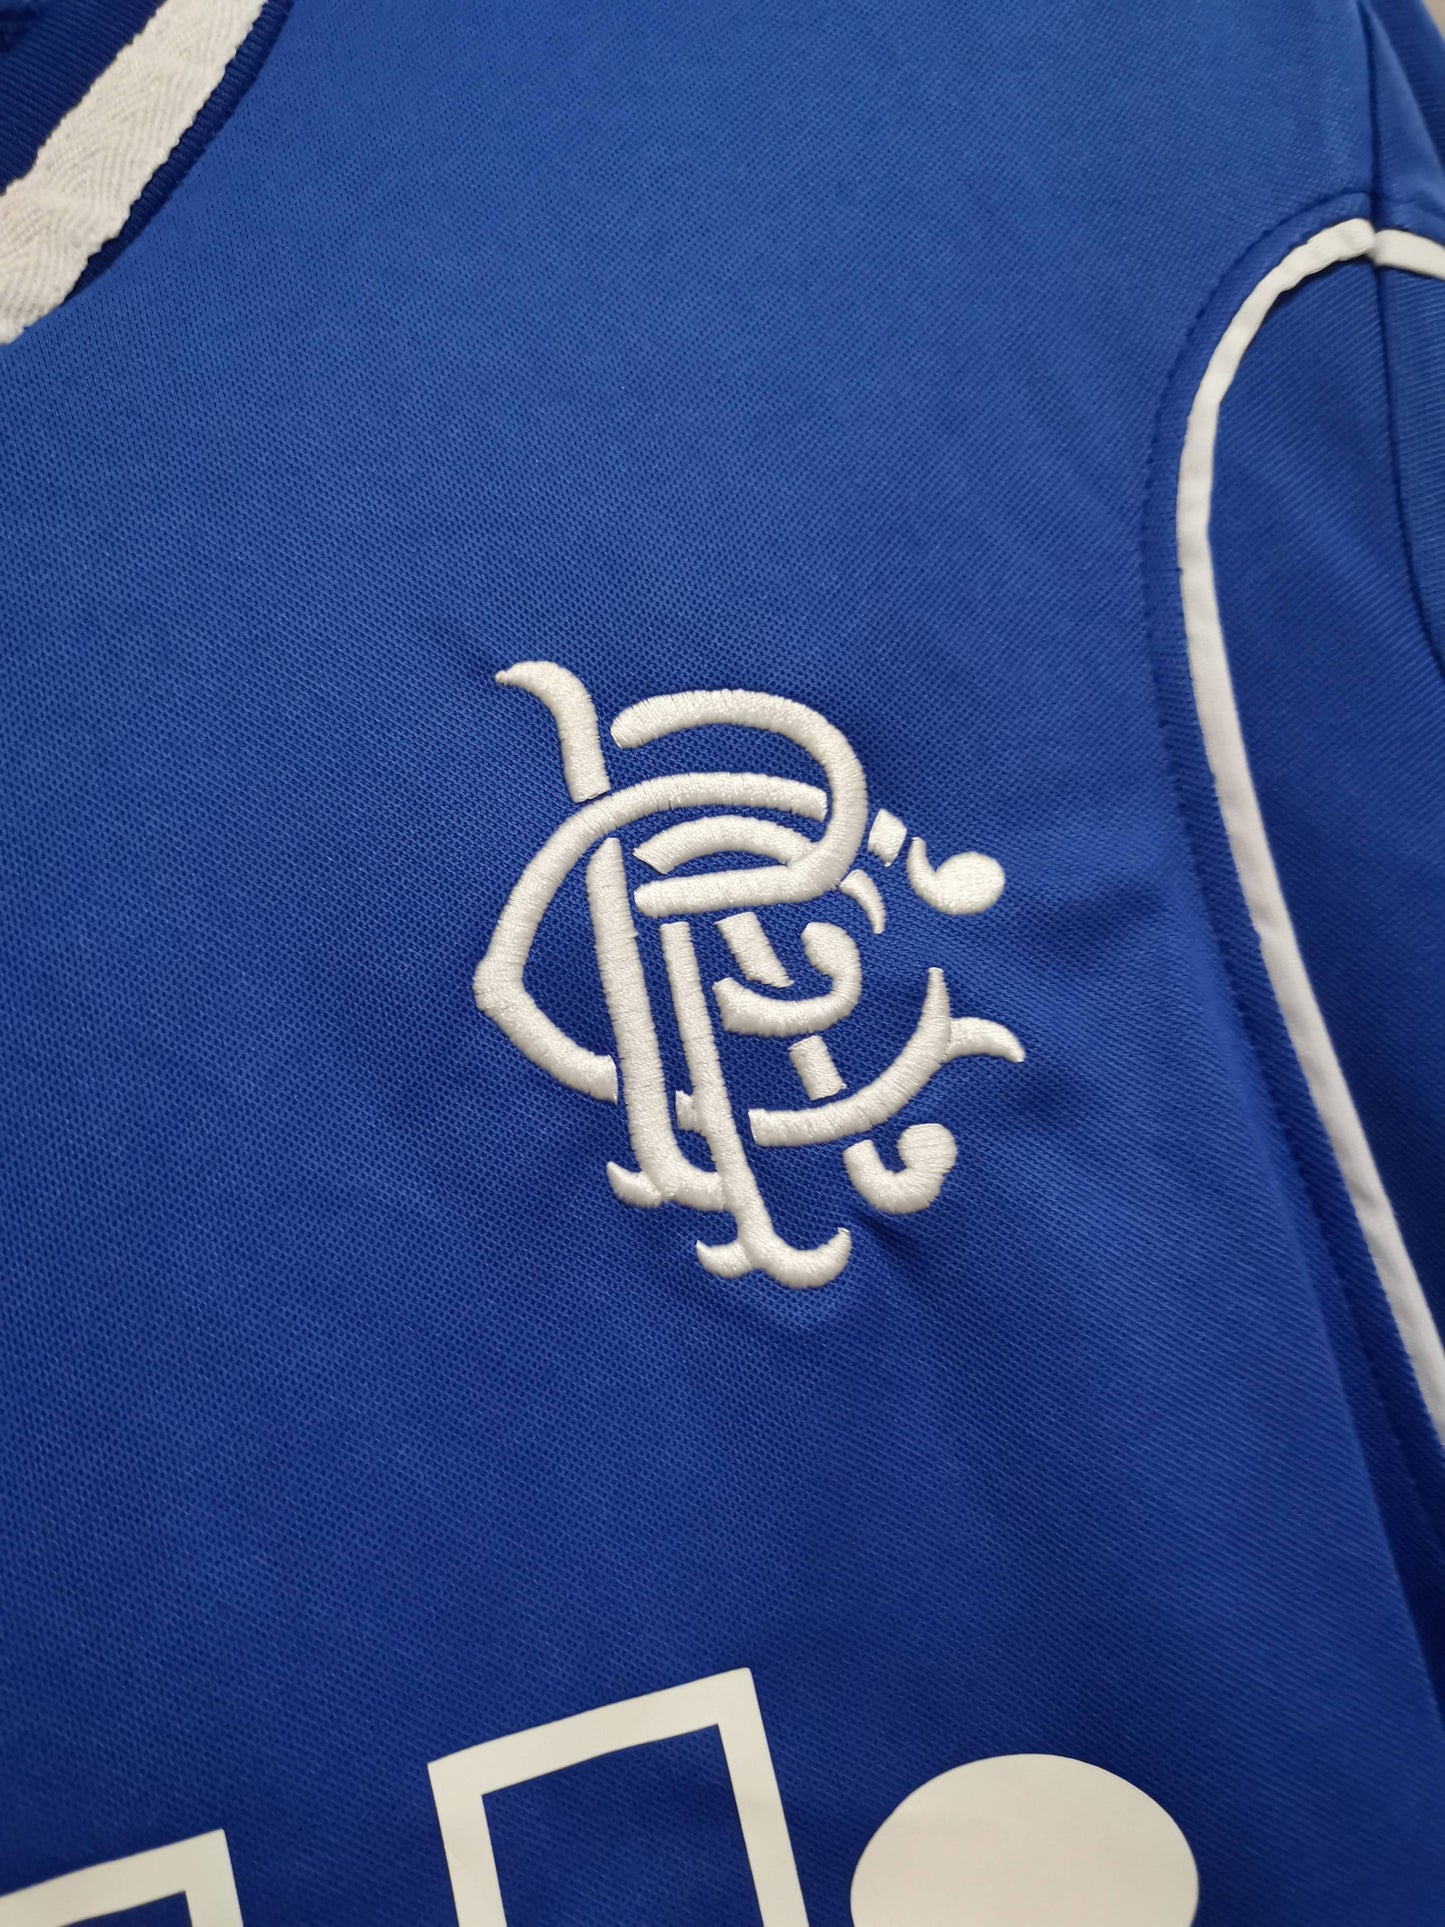 Rangers 99-01 Home Shirt